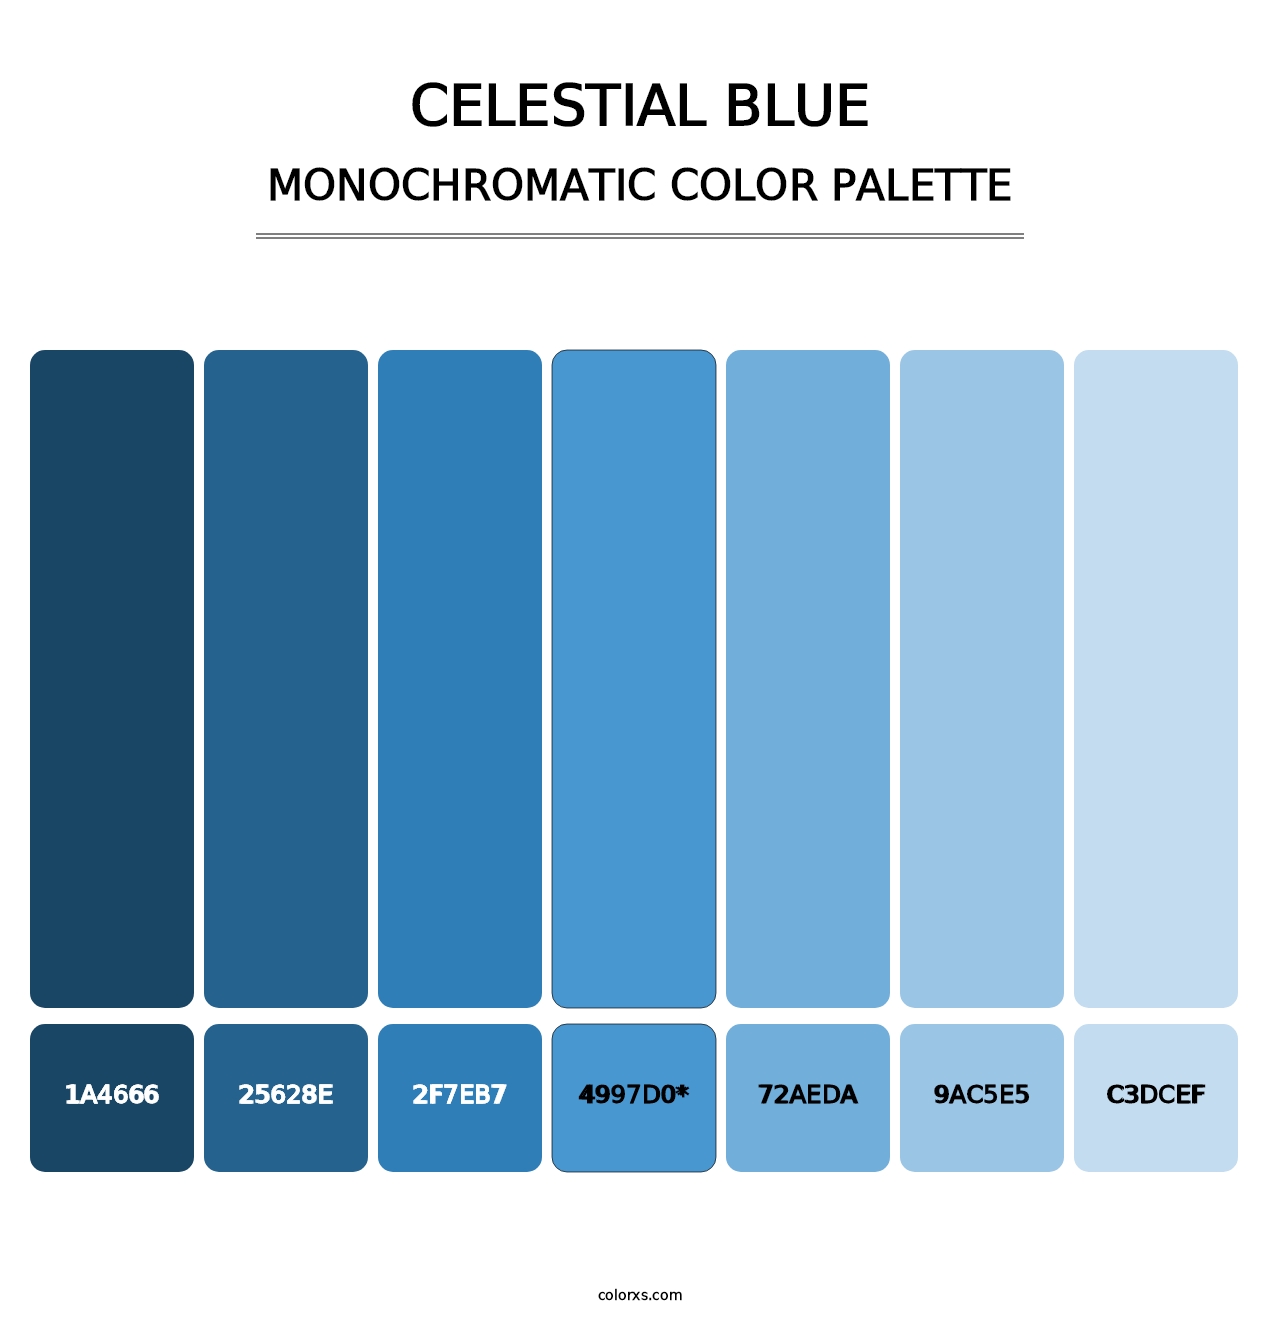 Celestial Blue - Monochromatic Color Palette